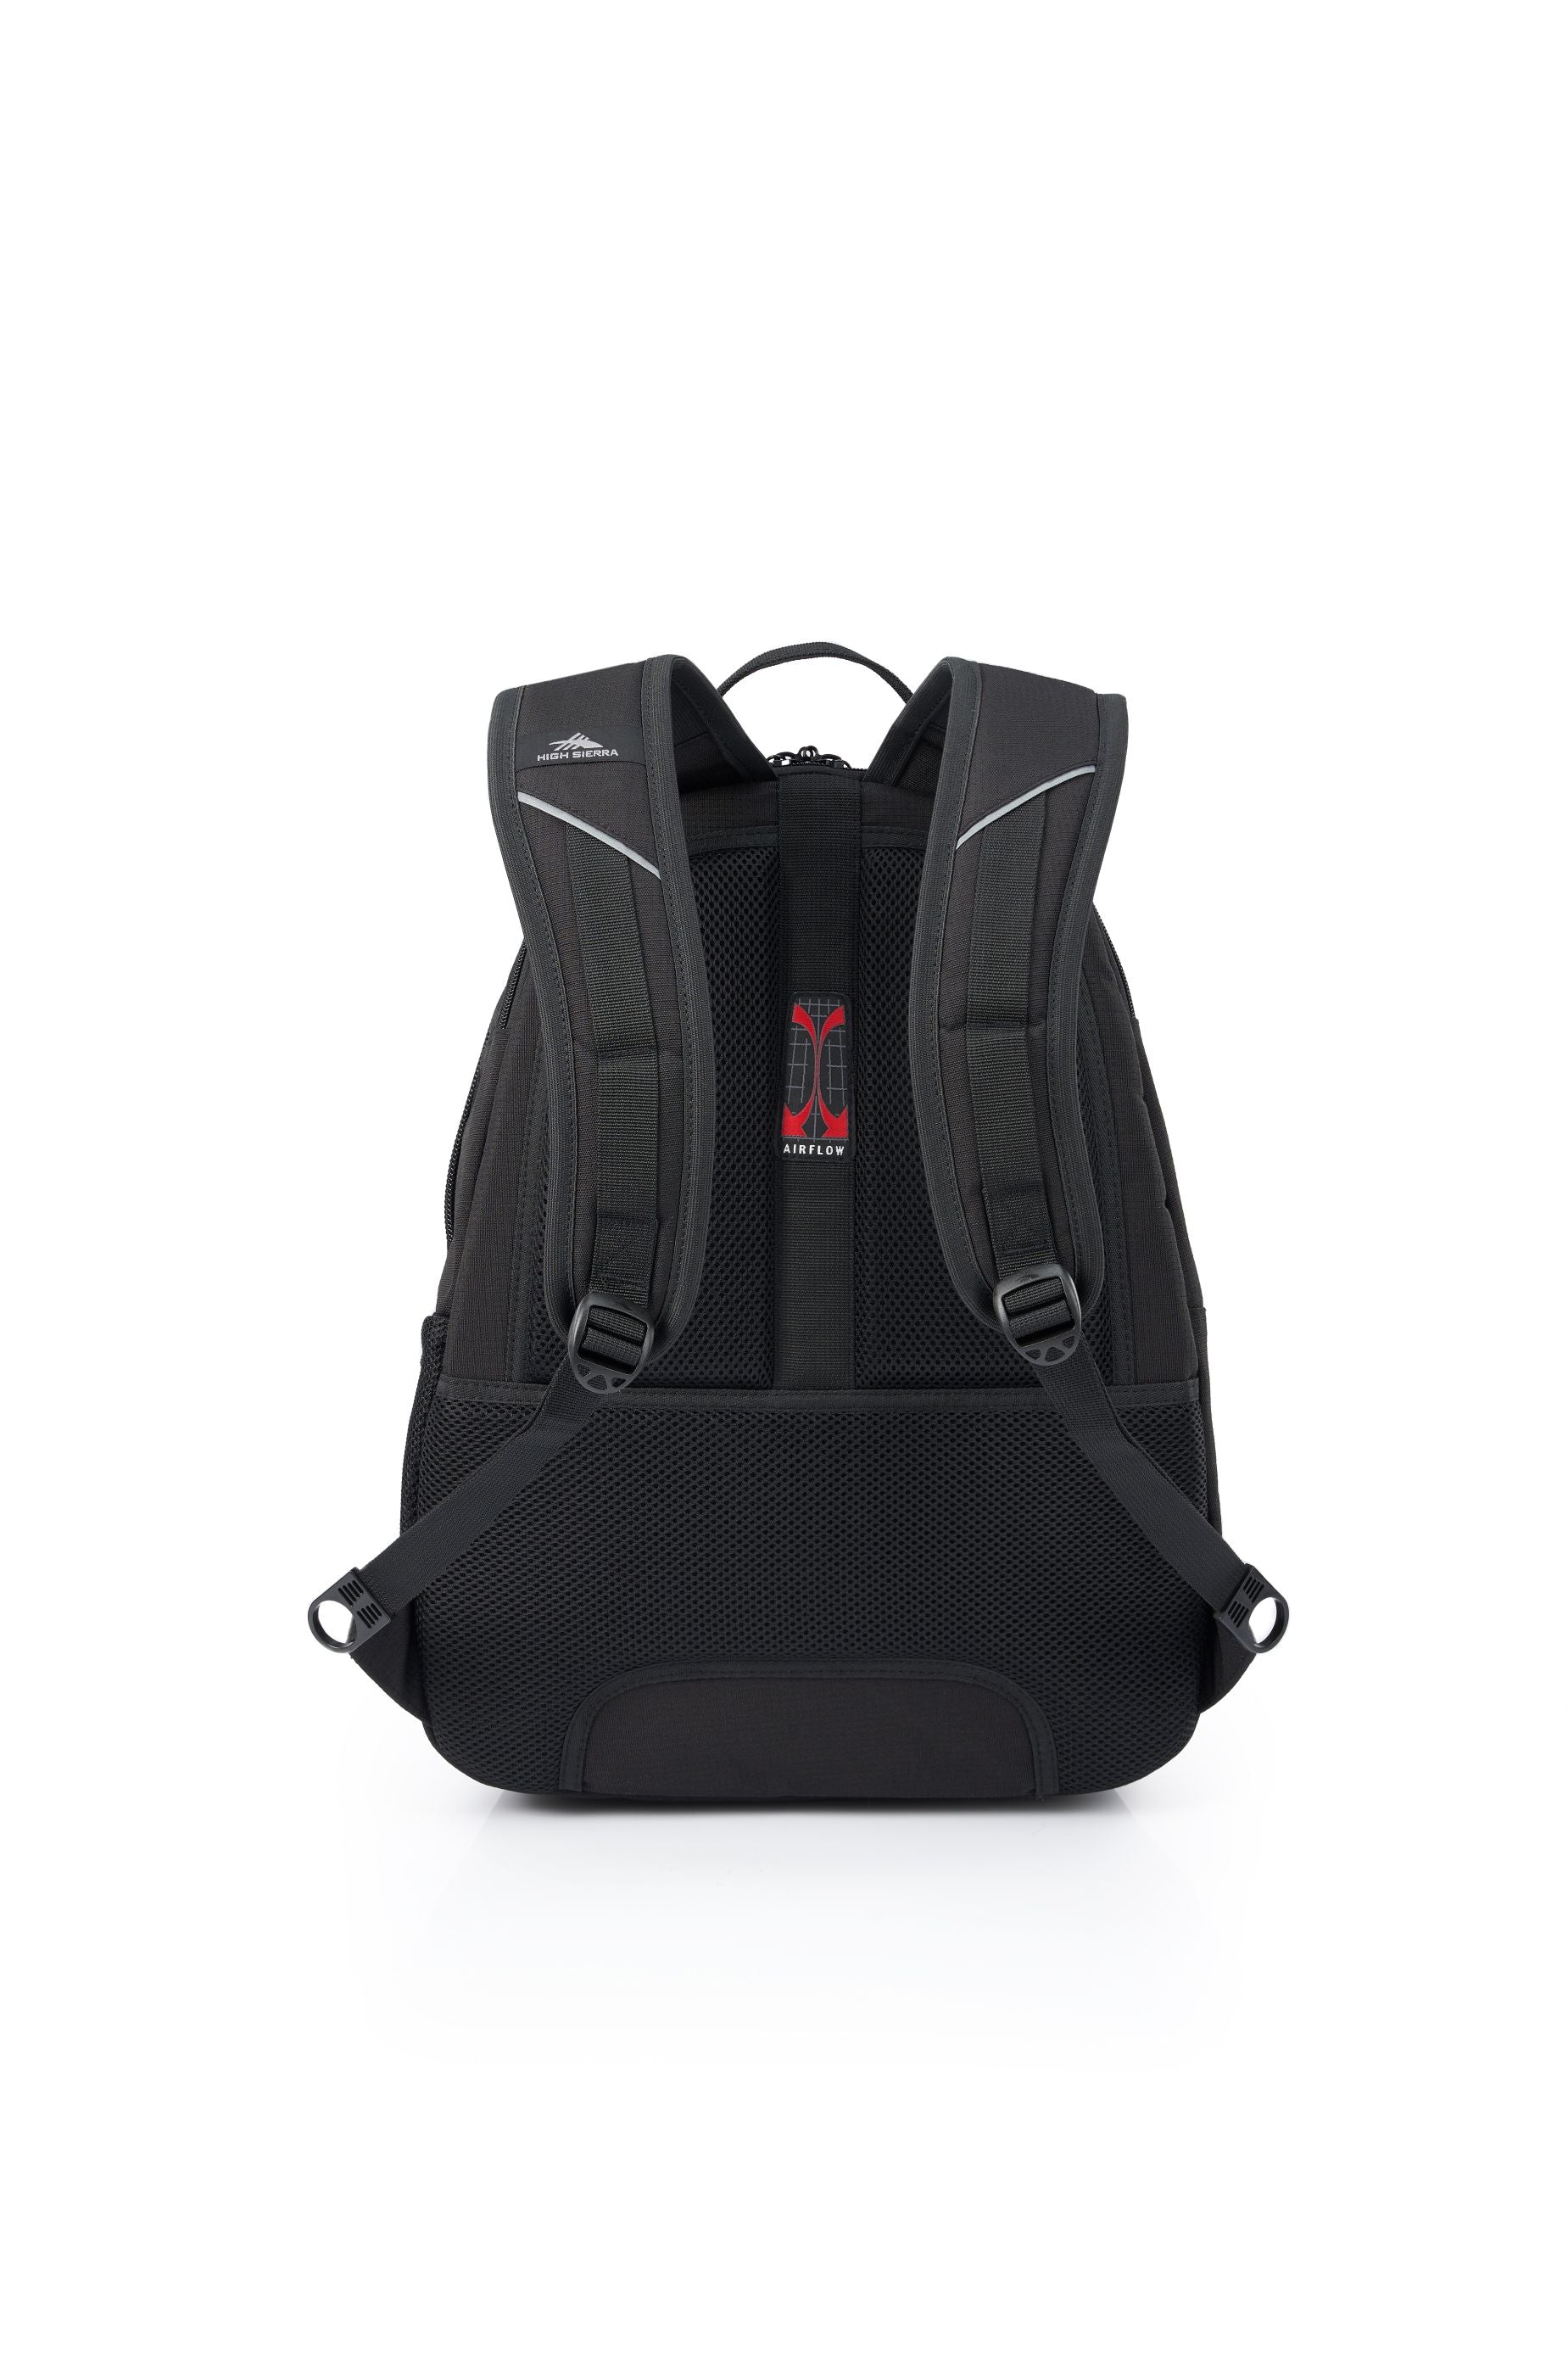 High Sierra - Academy 3.0 Backpack Eco - Black-4